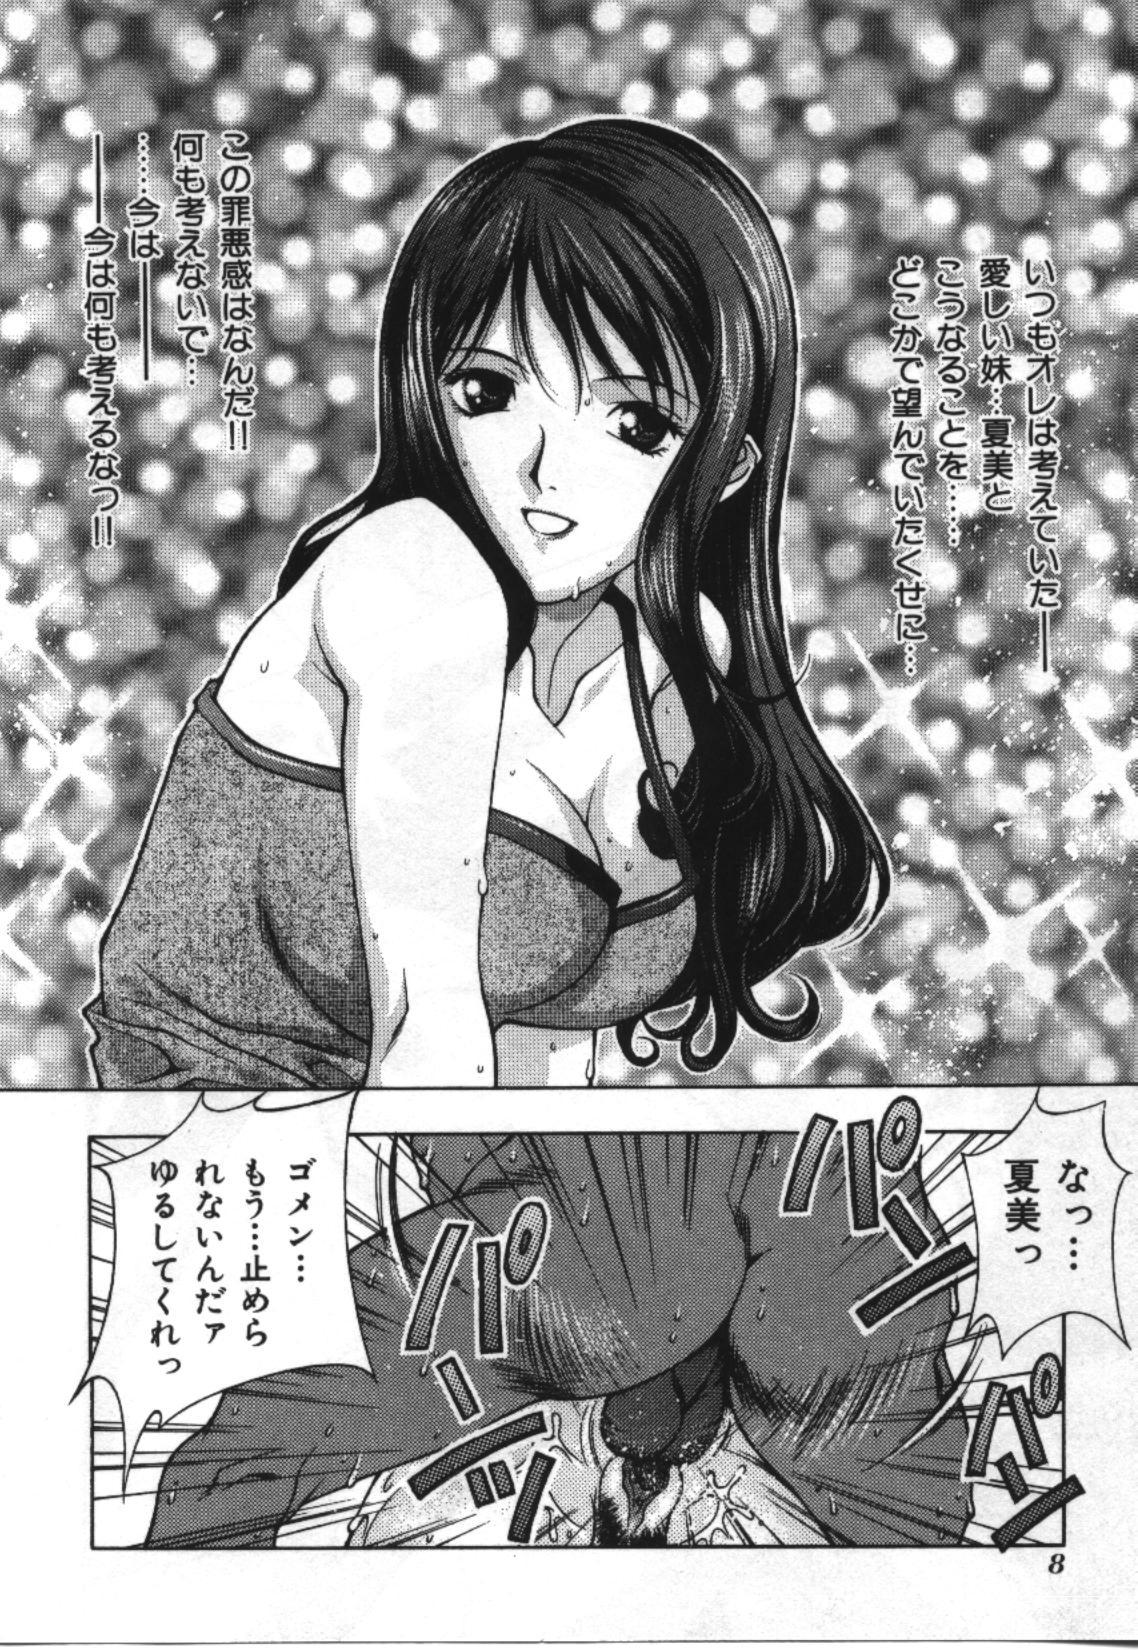  Imouto Koishi 2 Guys - Page 8